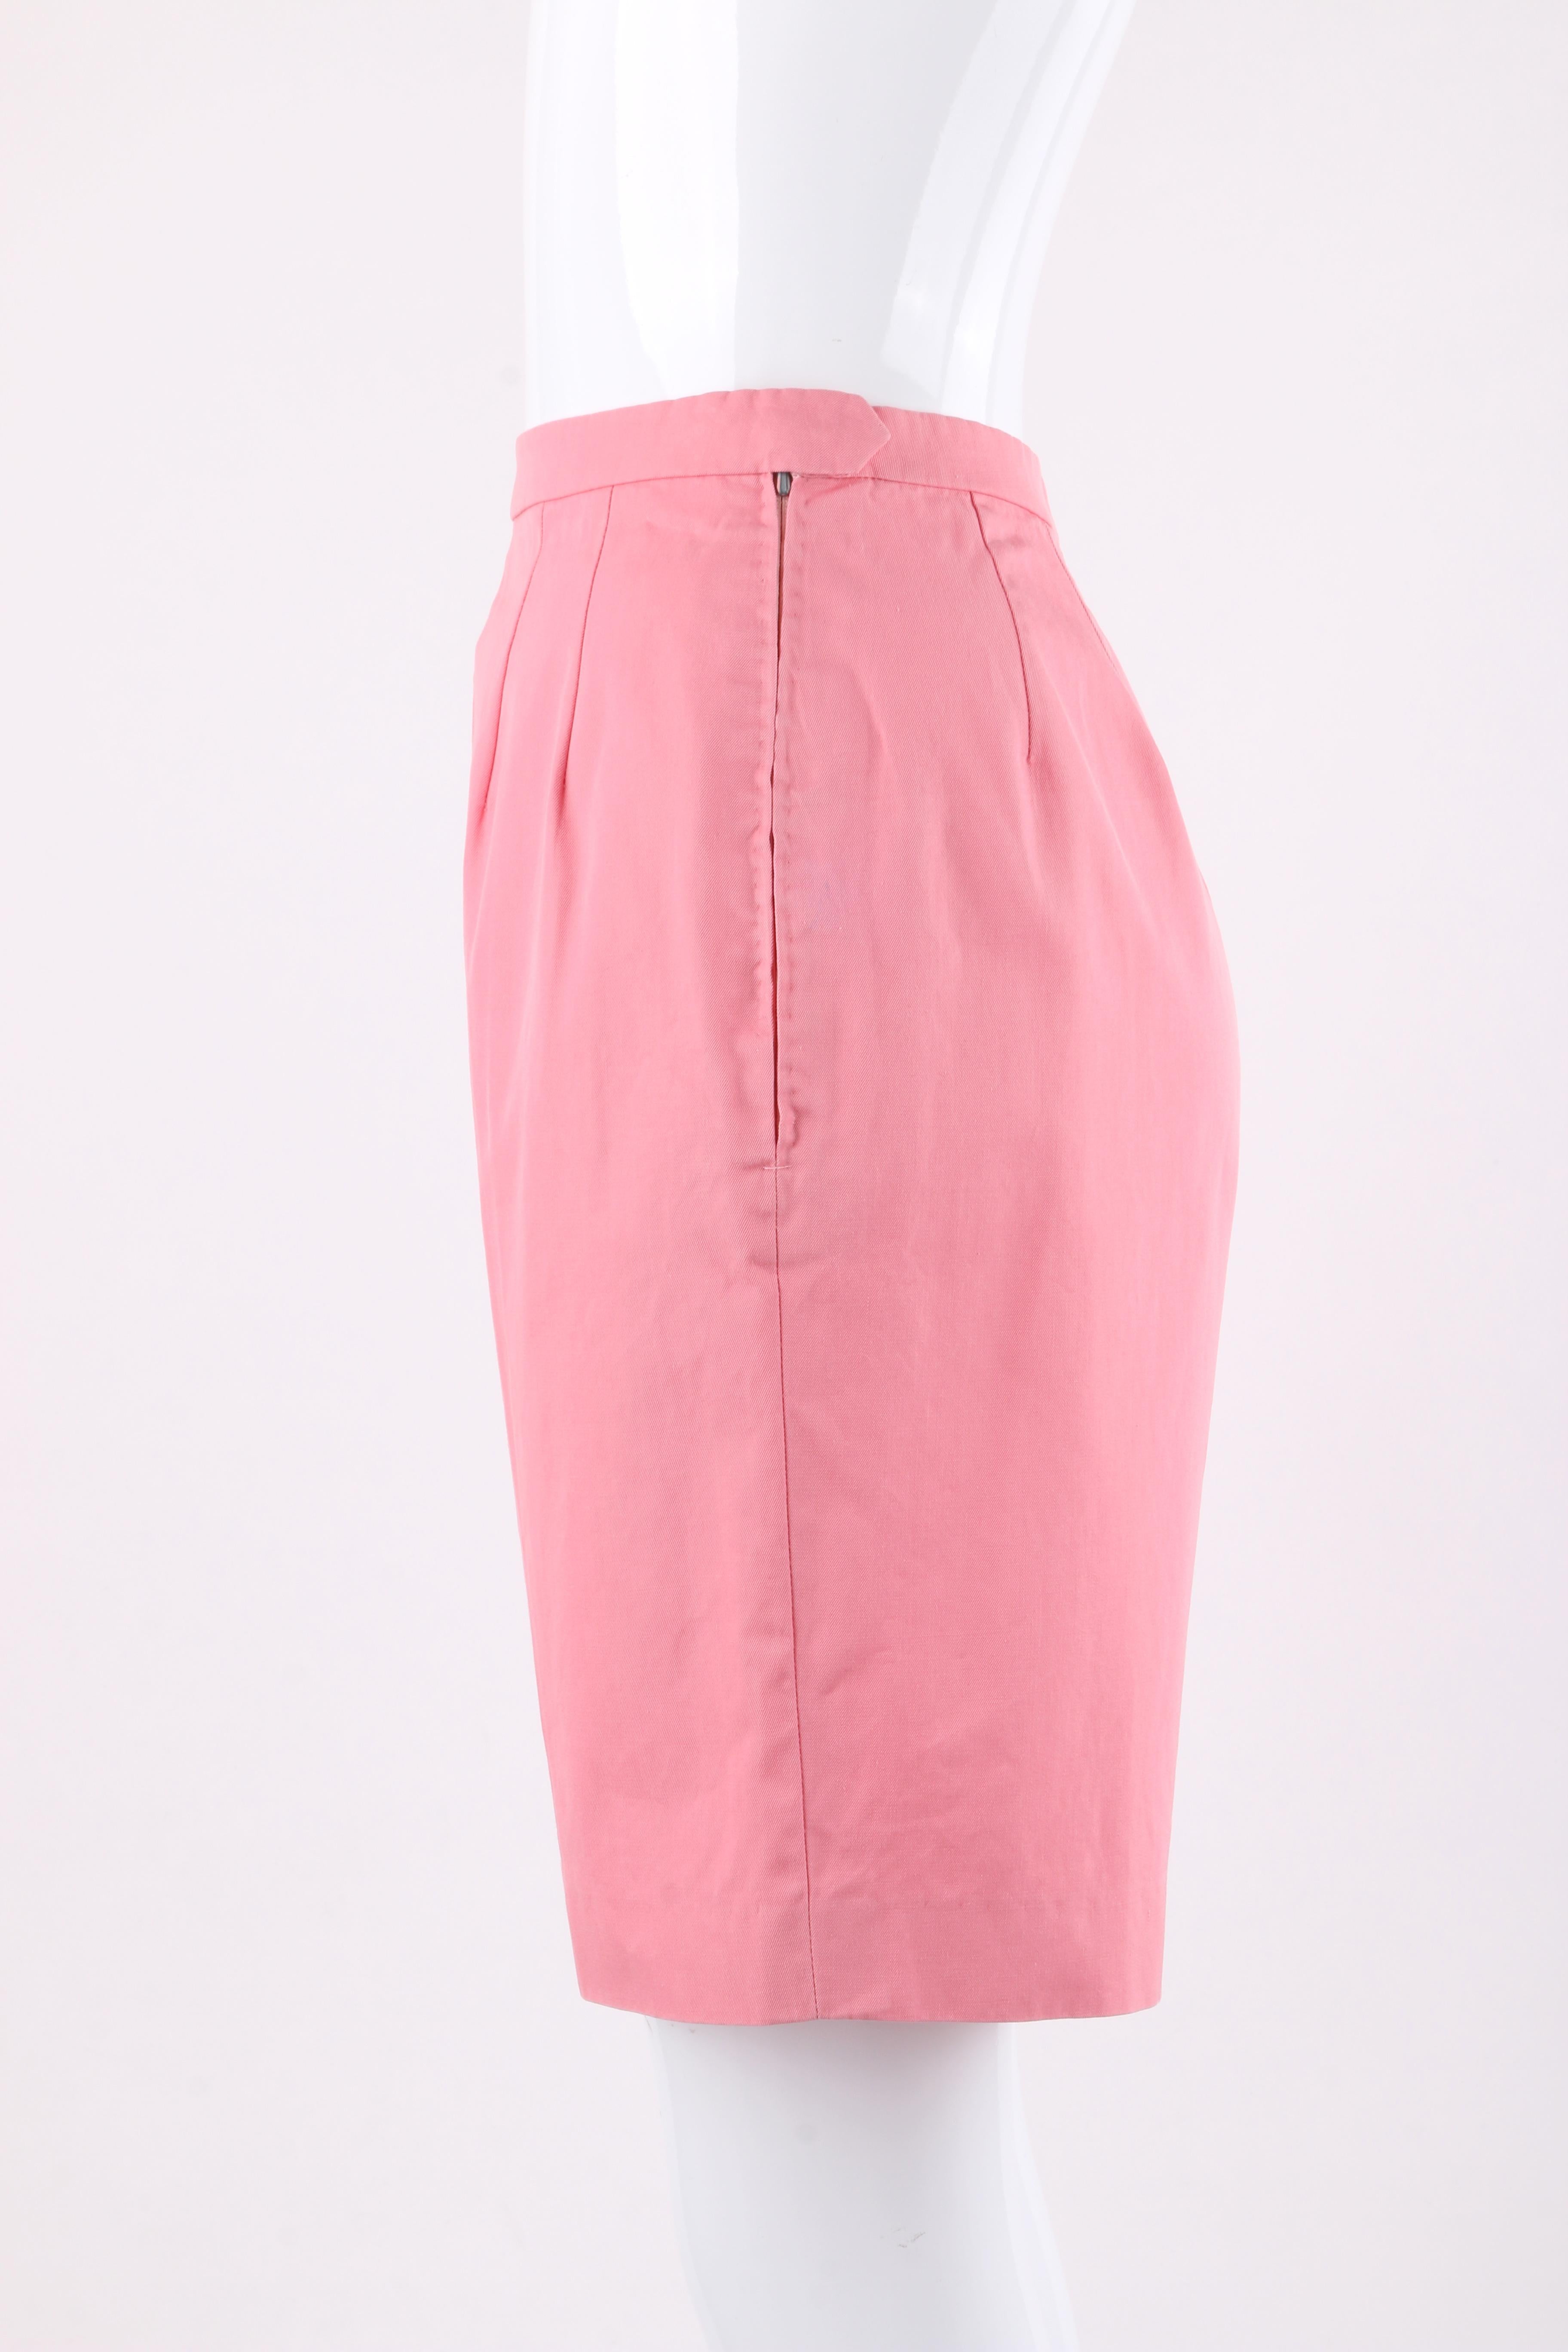 EMILIO PUCCI c.1960’s 2 Pc Pink Multi-color Tribal Button Front Shirt Shorts Set For Sale 2